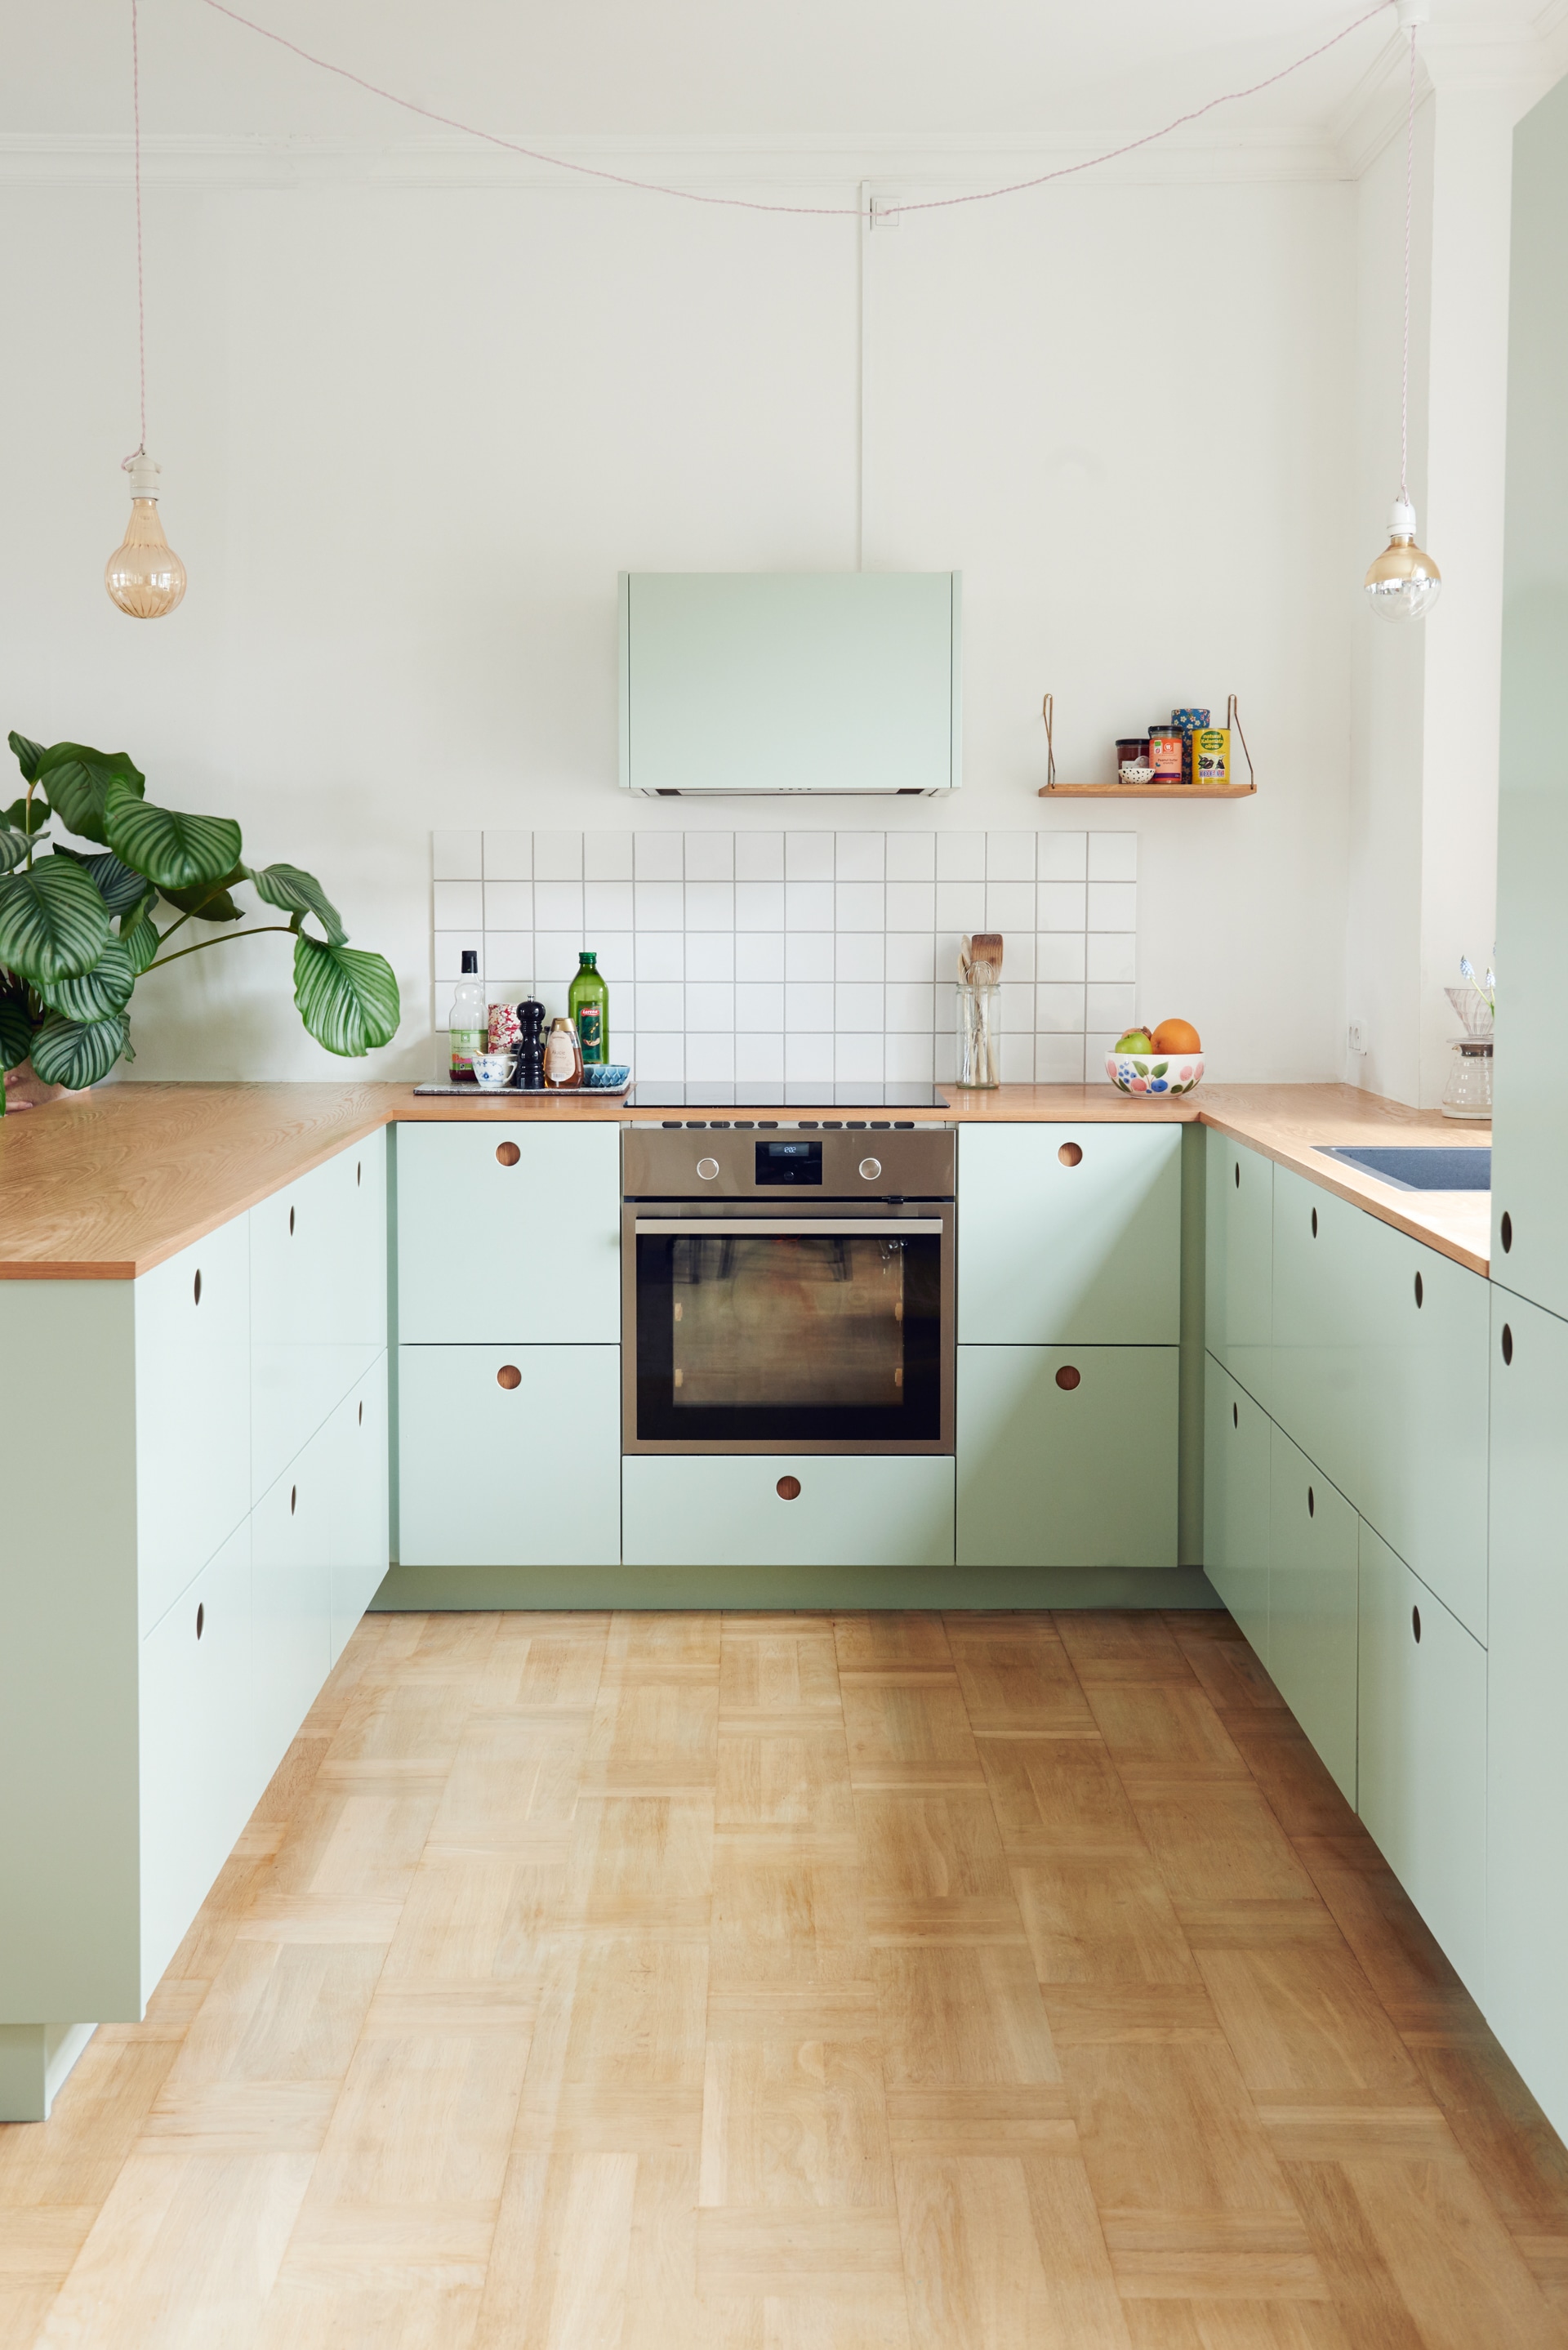 Mint Green Kitchen Accessories - My Kitchen Accessories